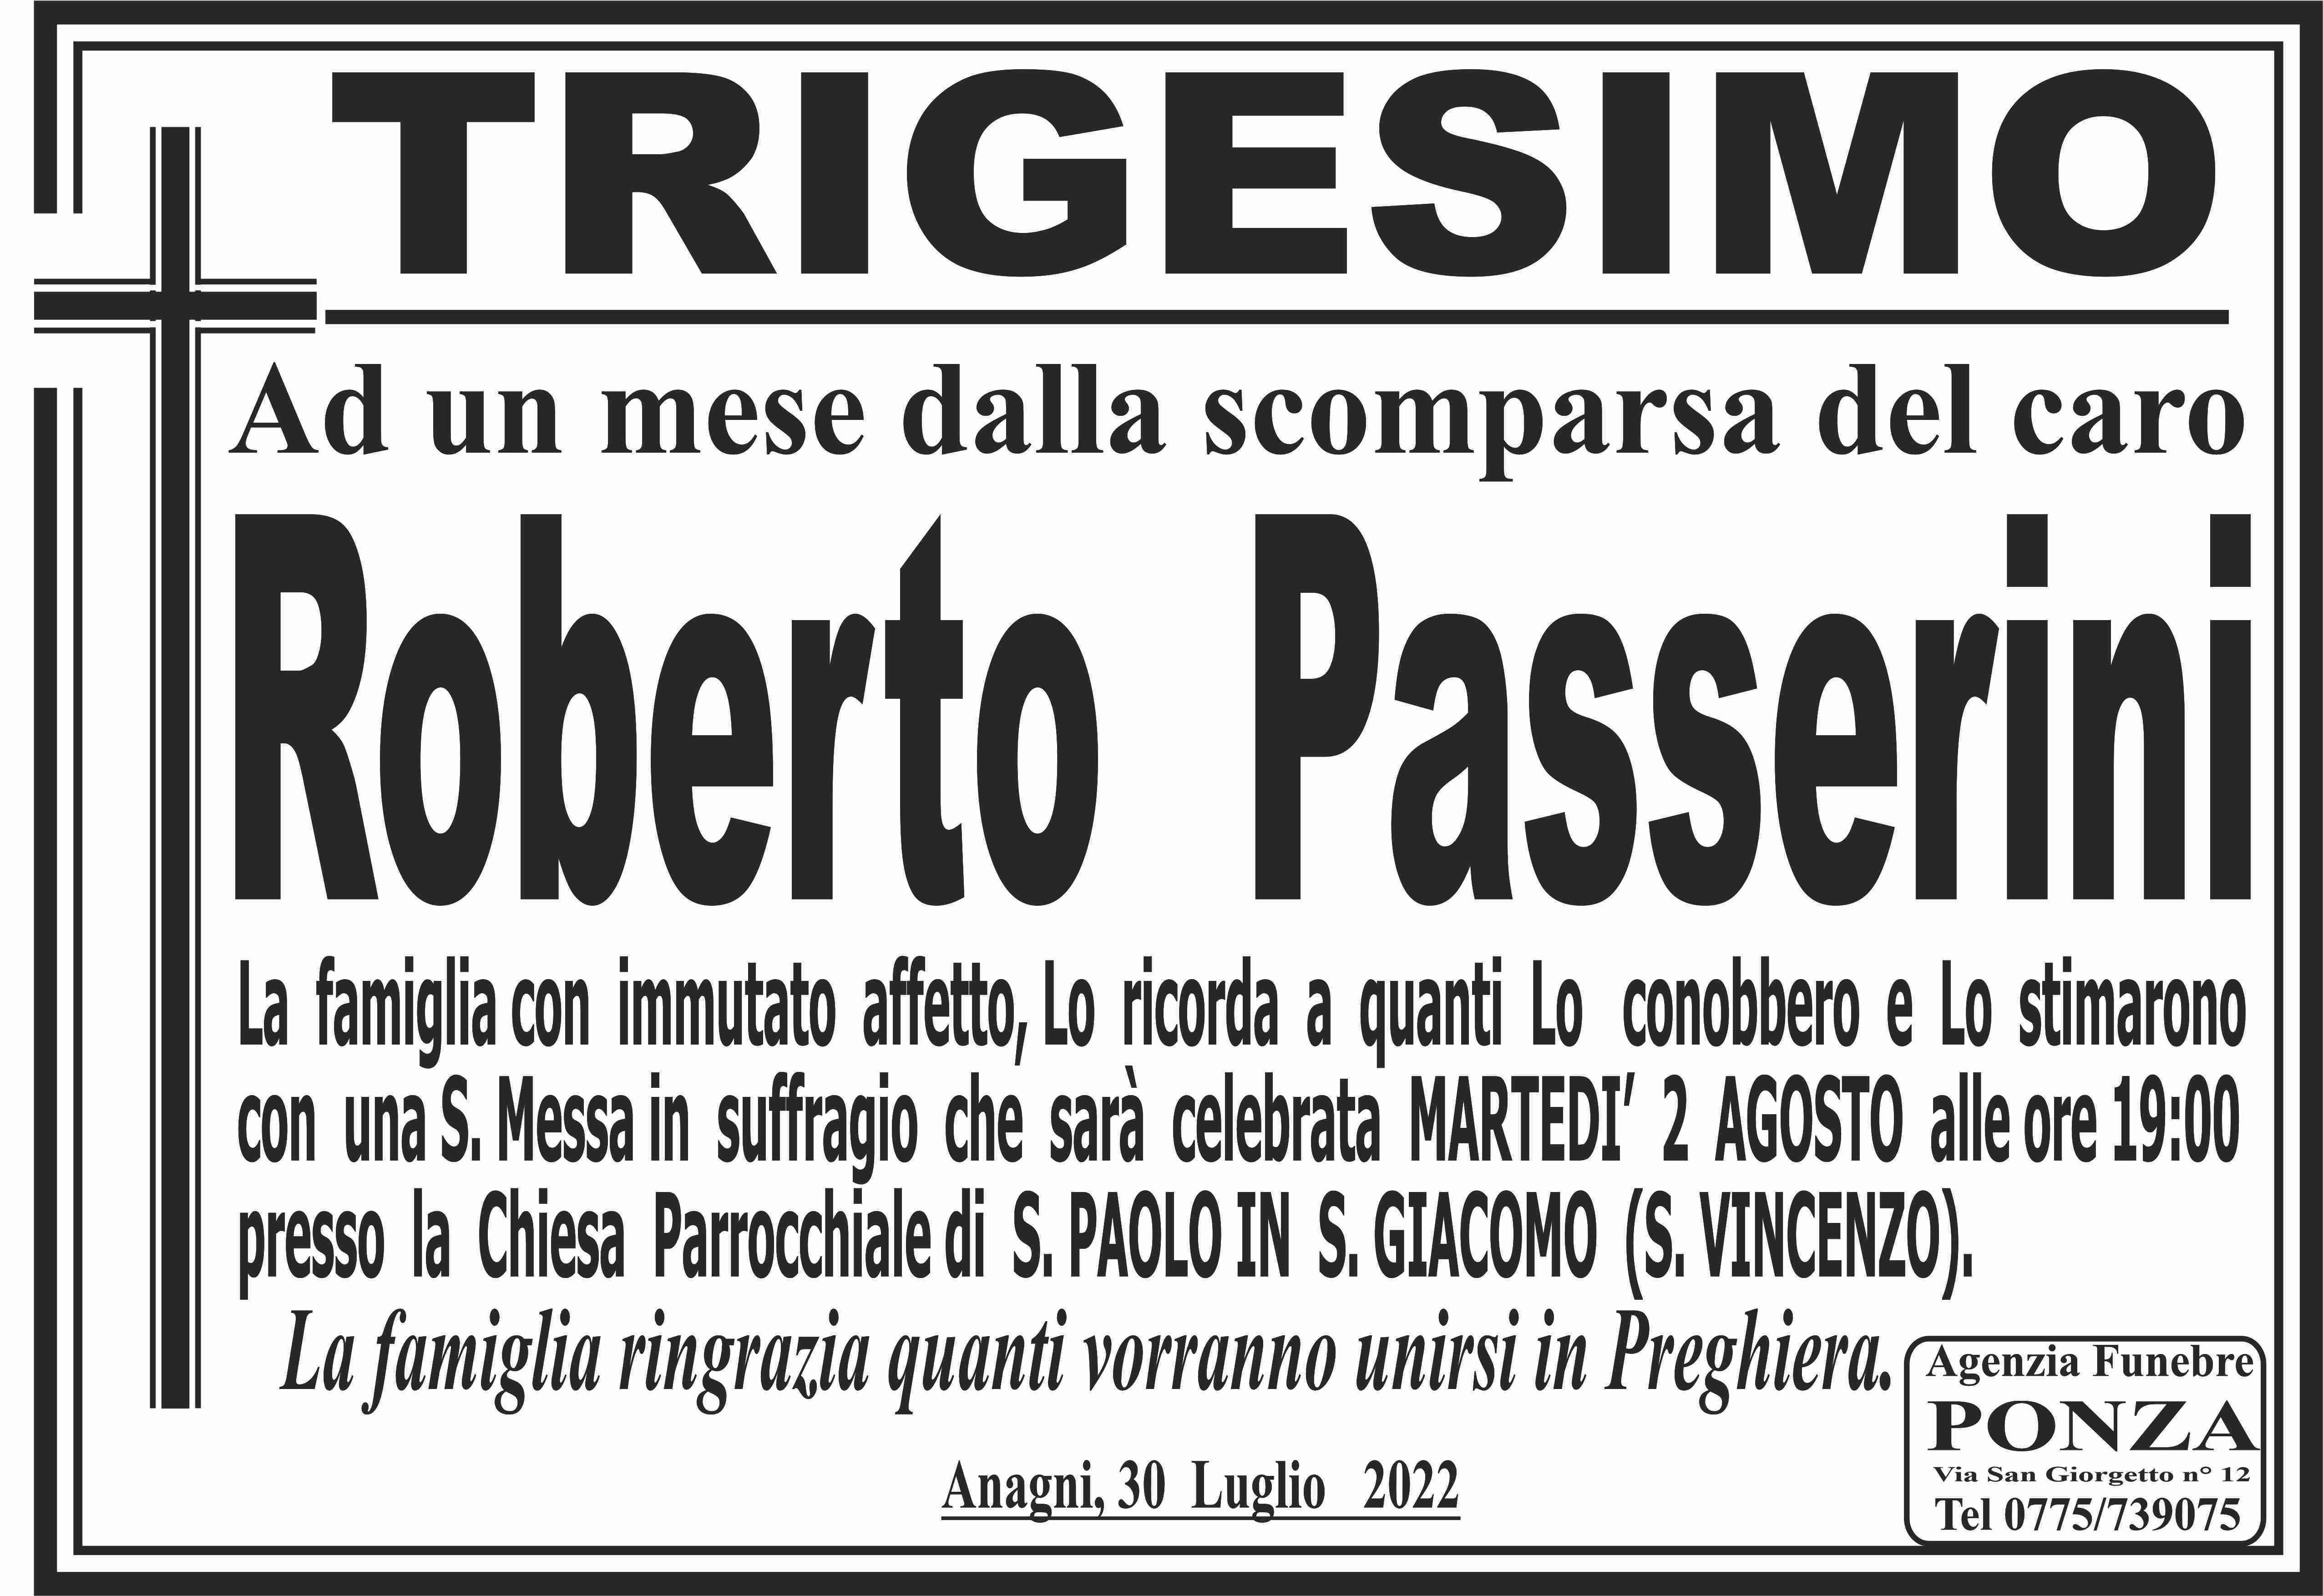 Roberto Passerini